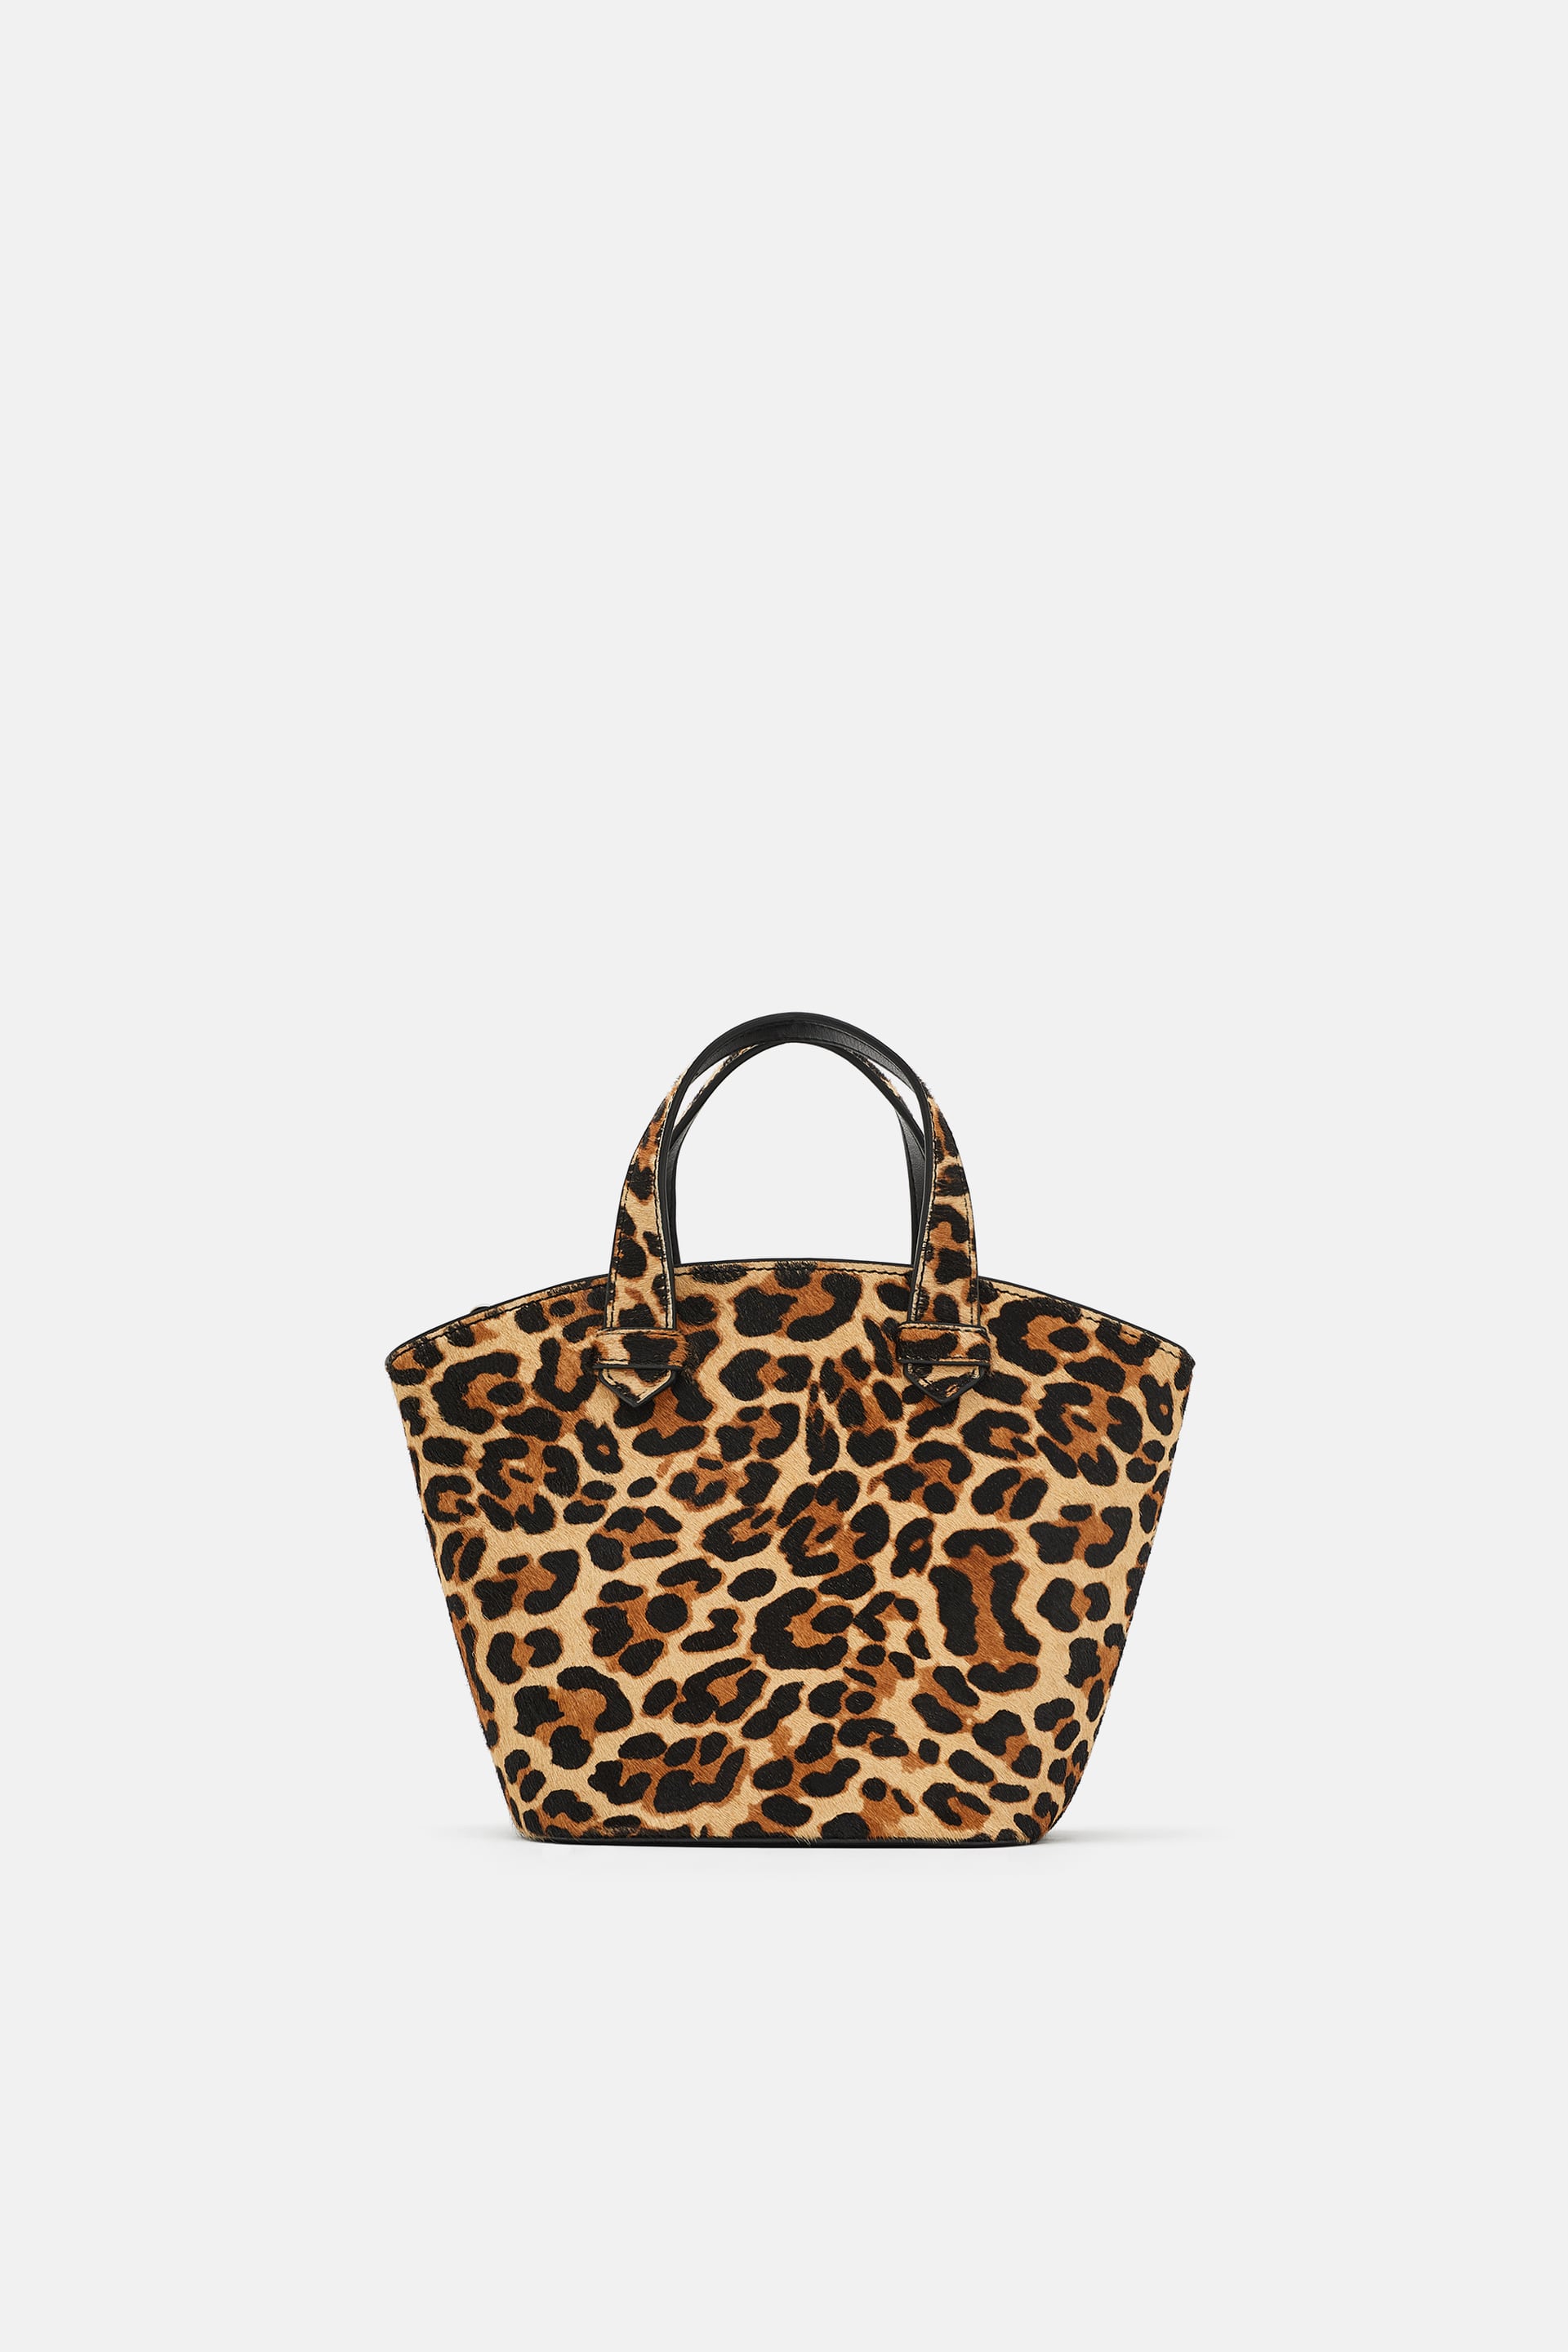 leopard print bag zara 5599 – Boodica